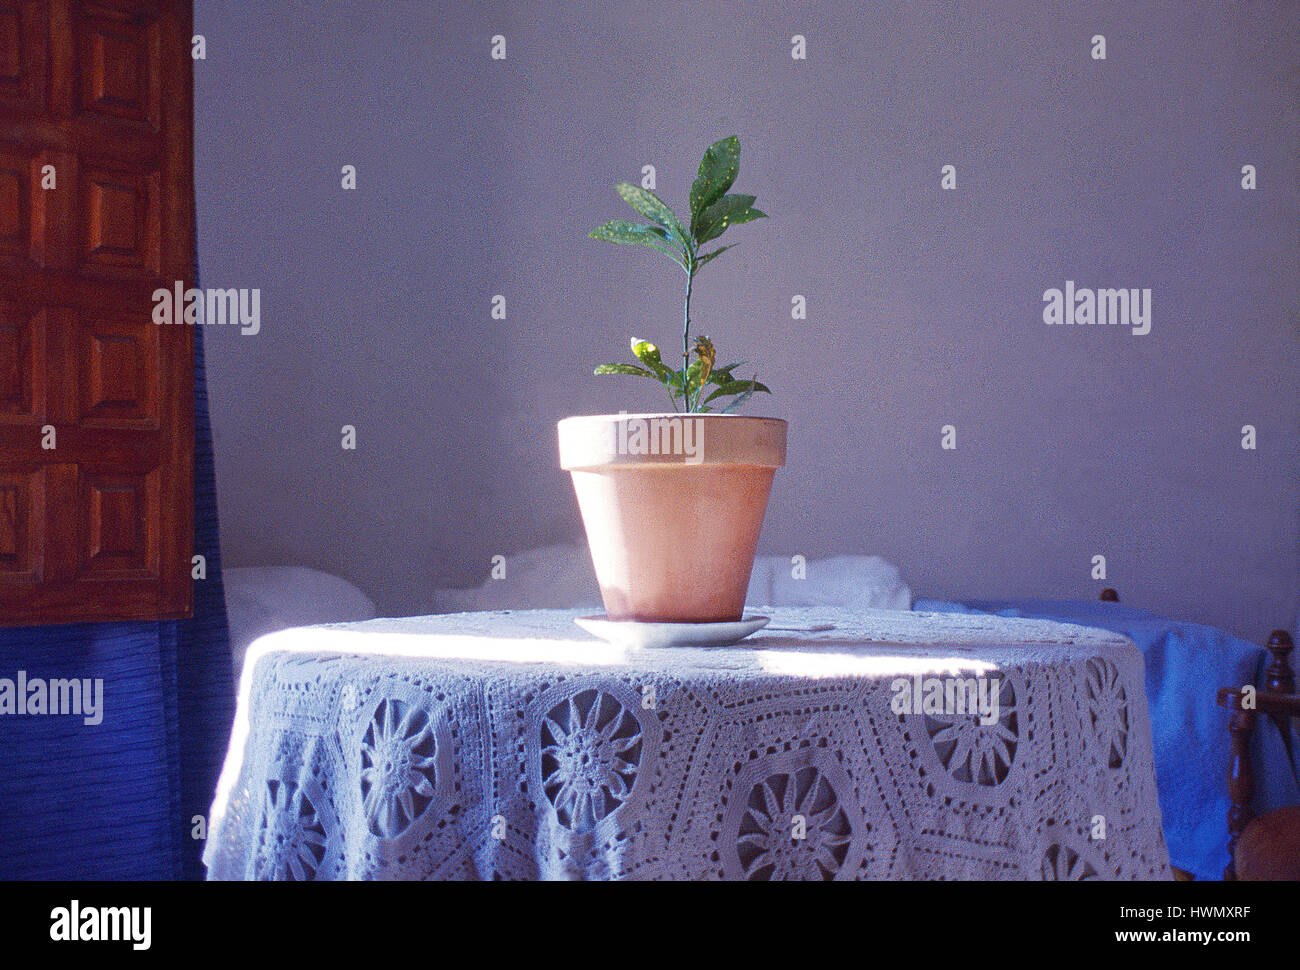 Plante en pot dans la maison rurale. Cuenca, Espagne. Banque D'Images